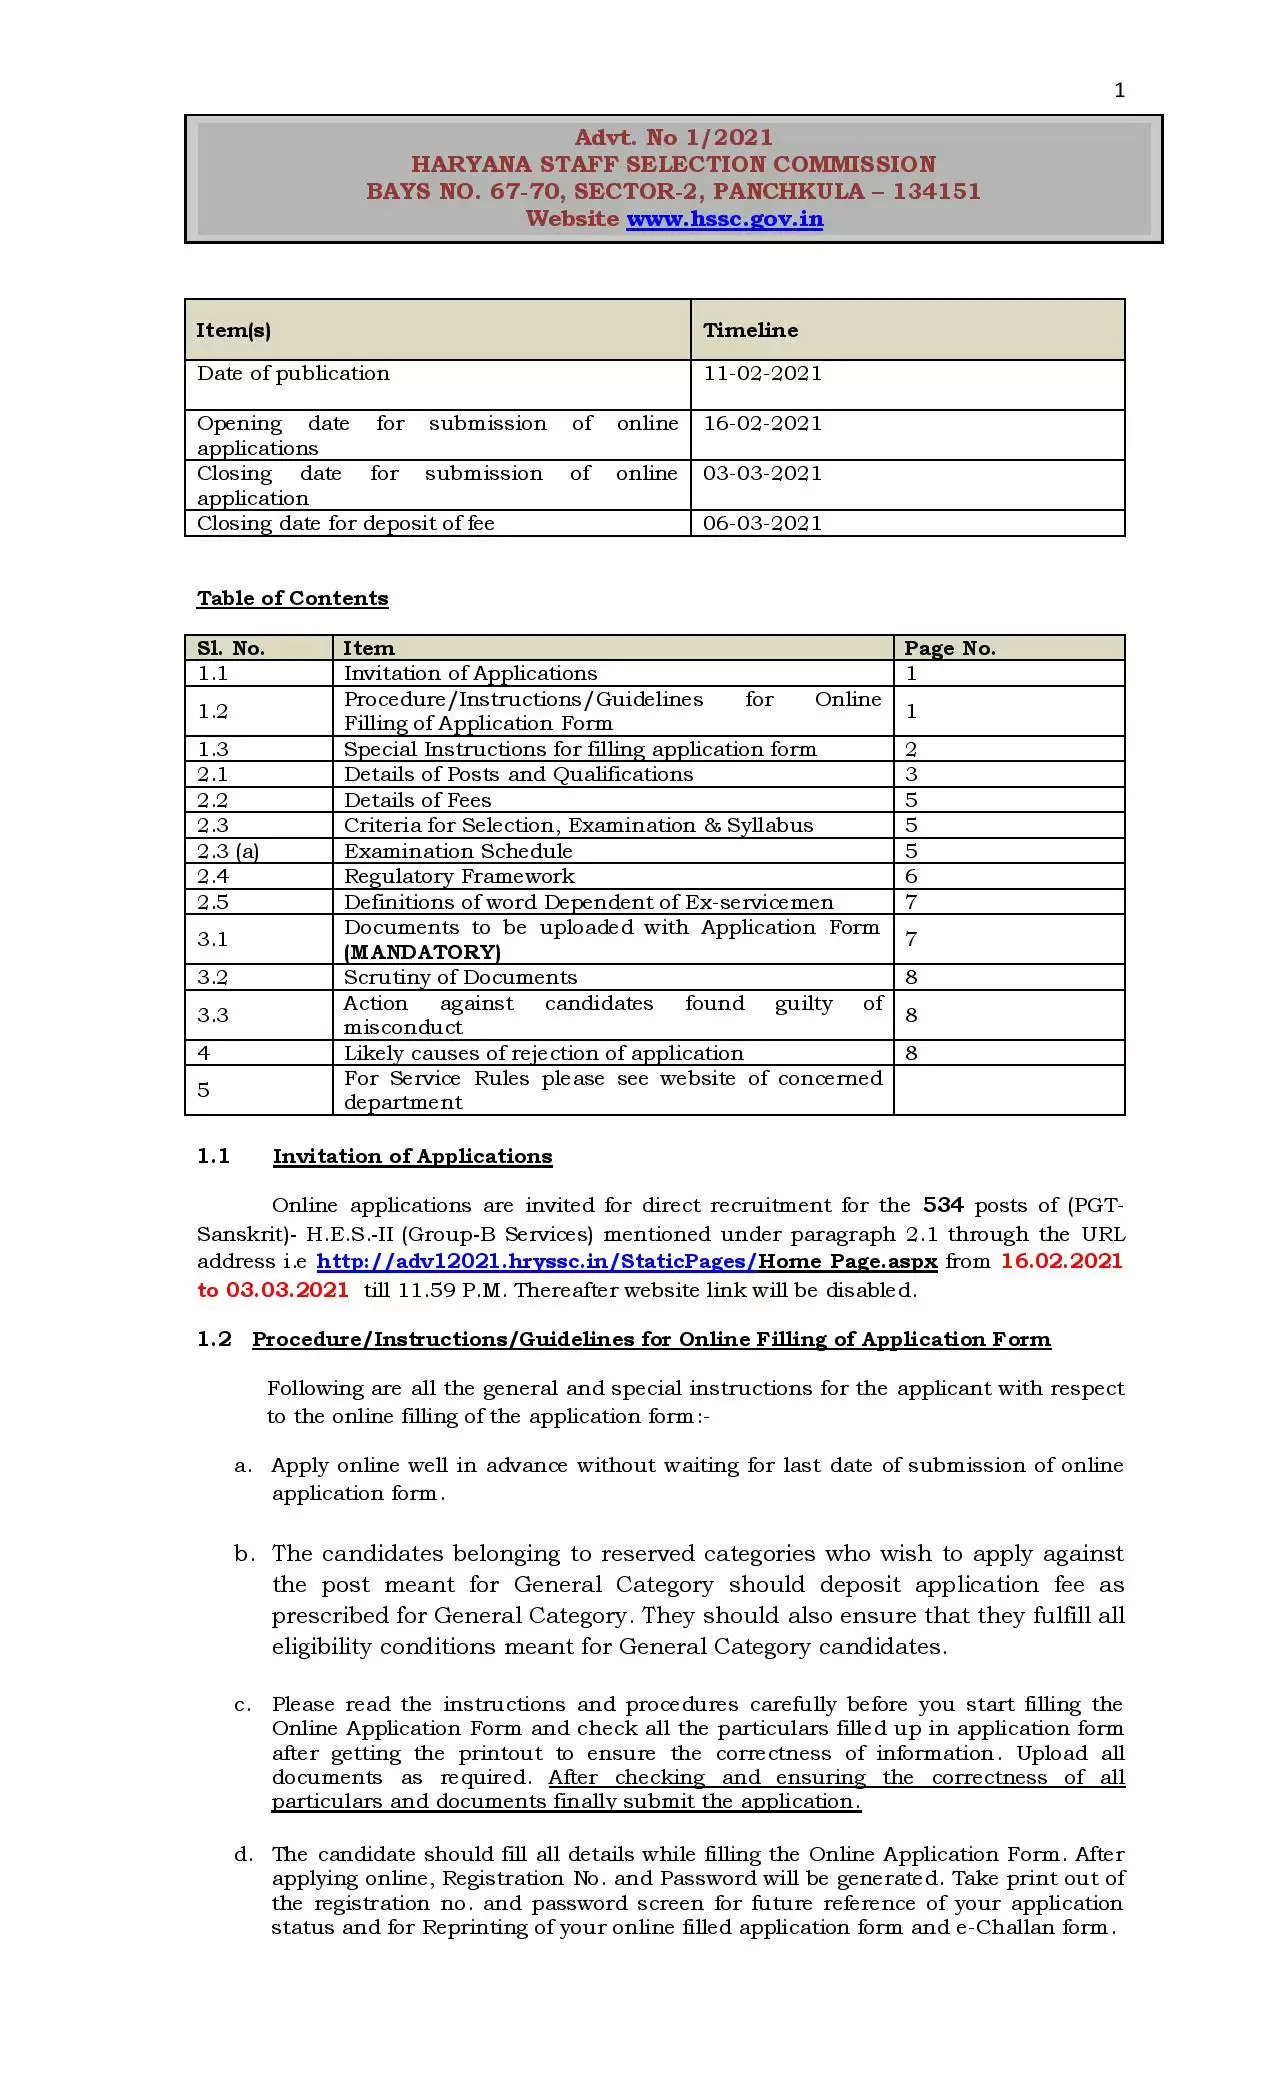 खुशखबरी- हरियाणा में बेरोजगारों के लिए निकली भर्ती, 534 पदों पर करें आवेदन